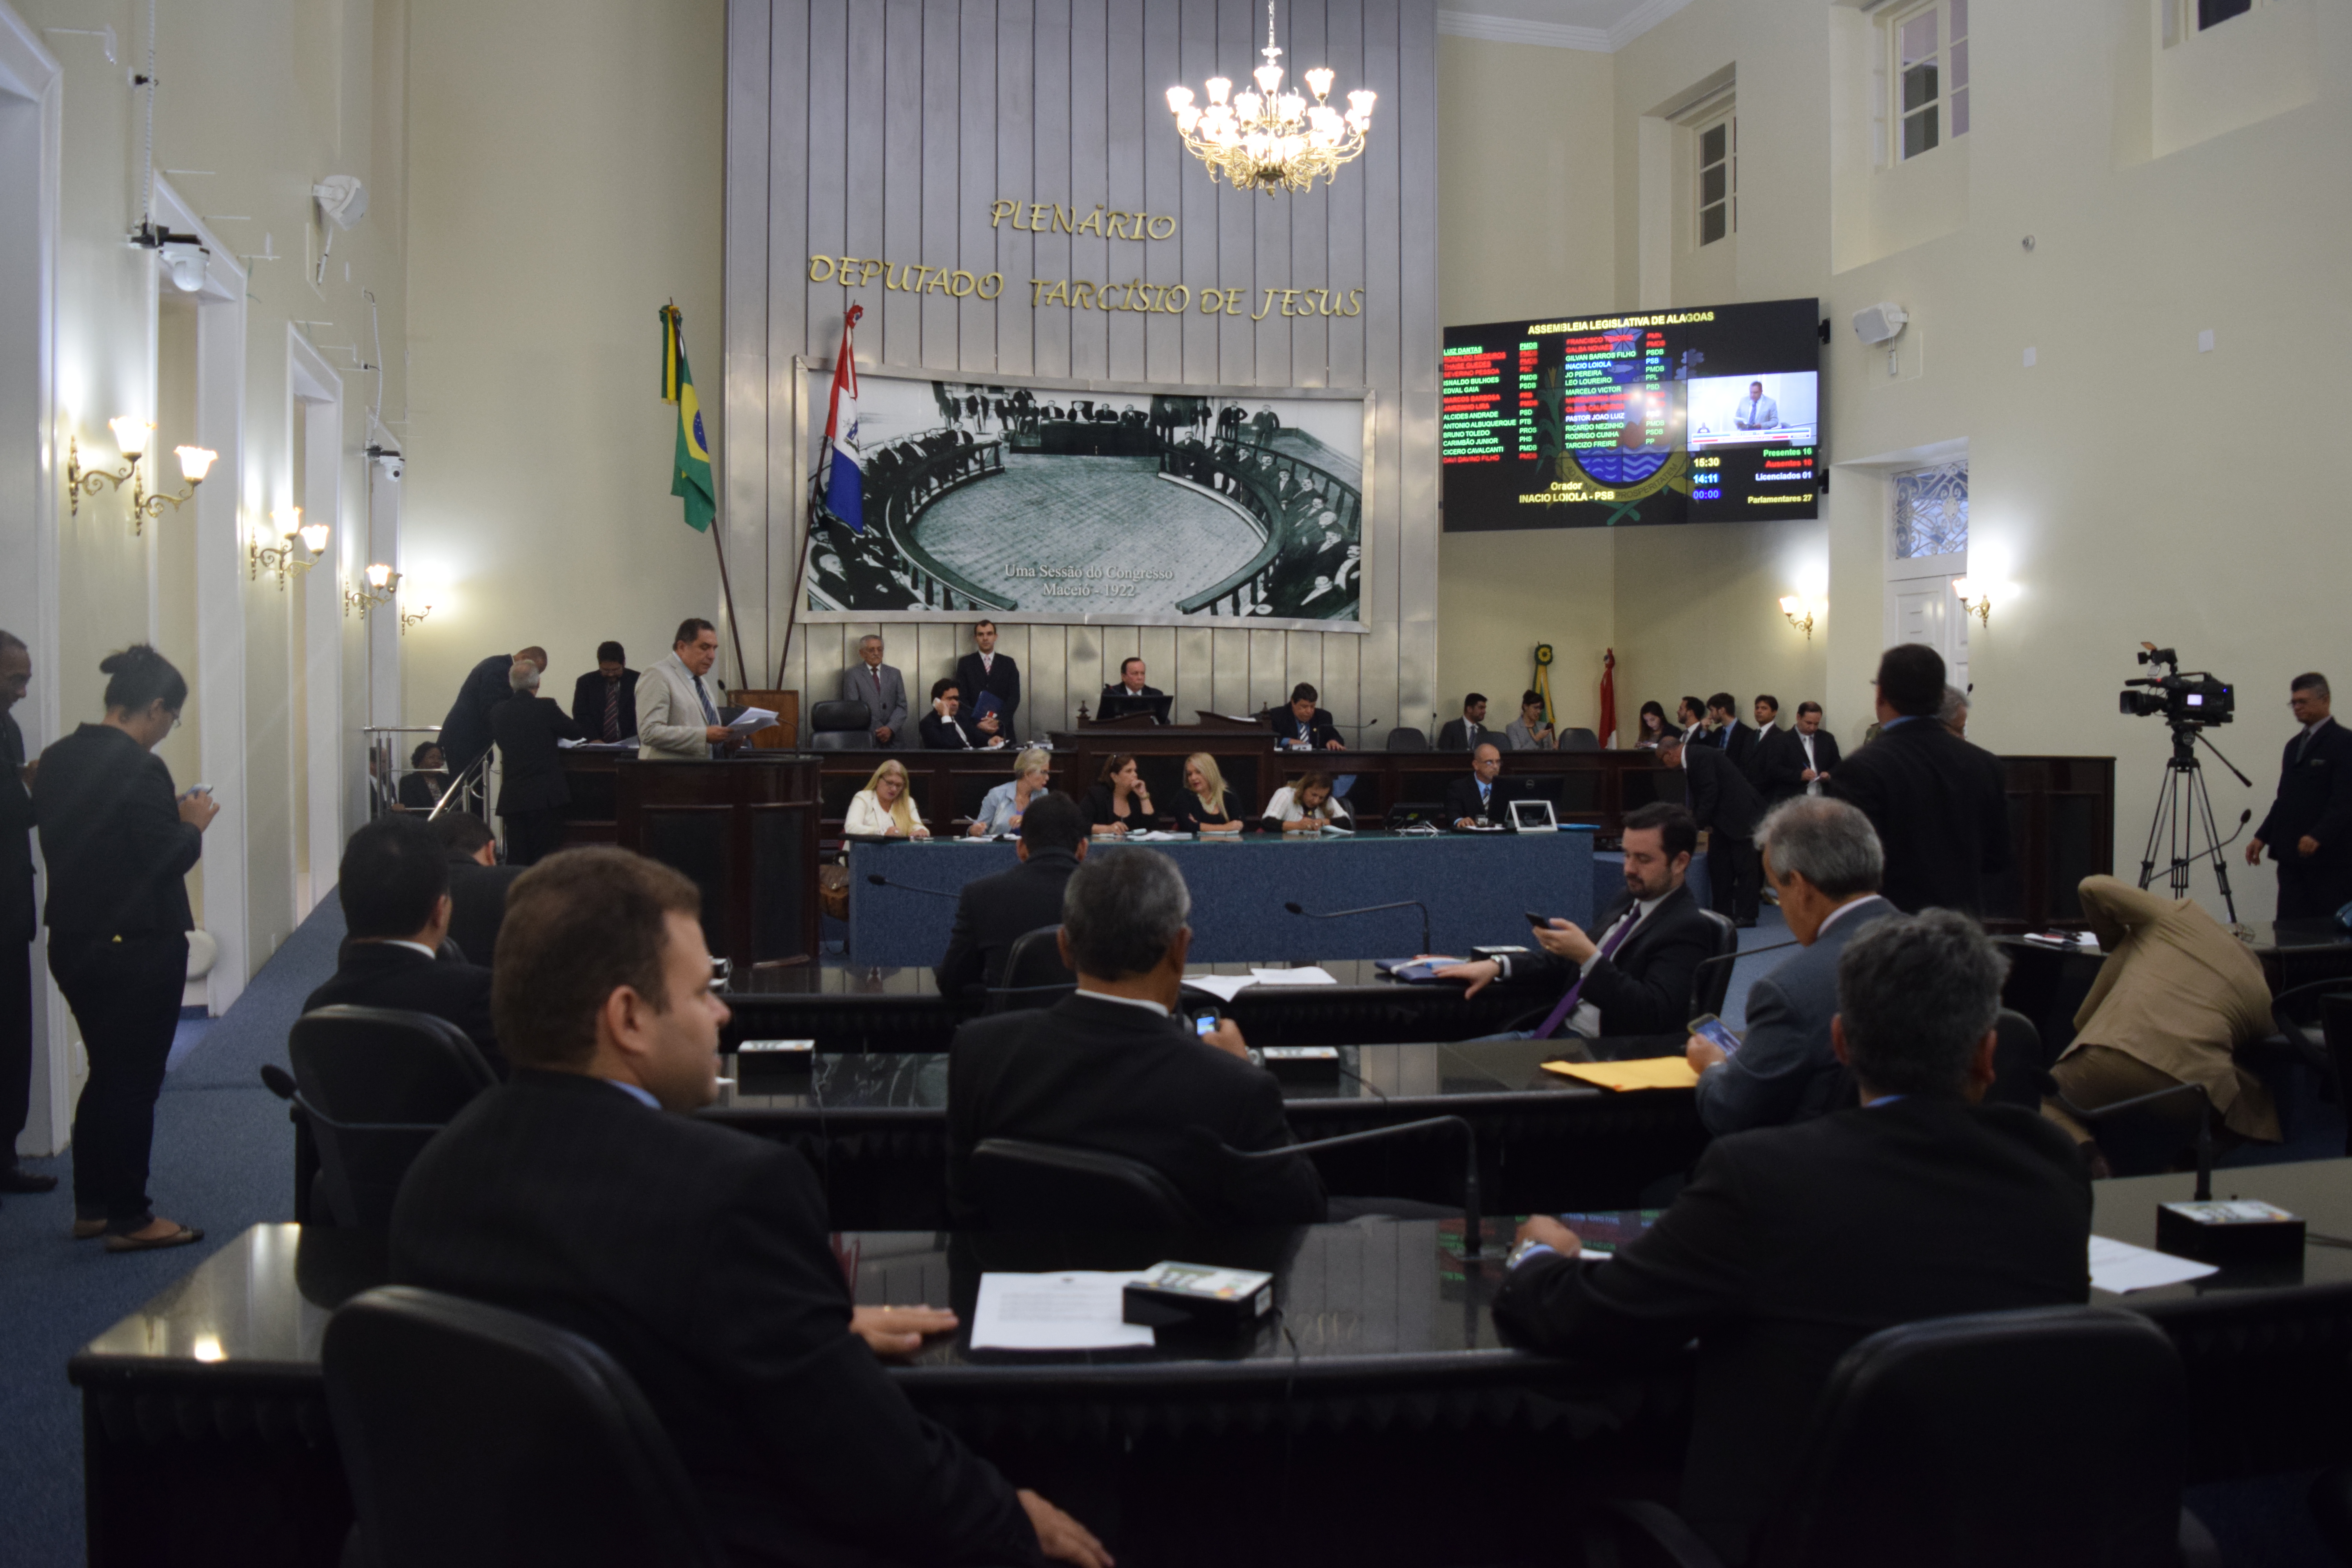 Plenário aprova contas do Executivo relativas ao exercício financeiro de 2013